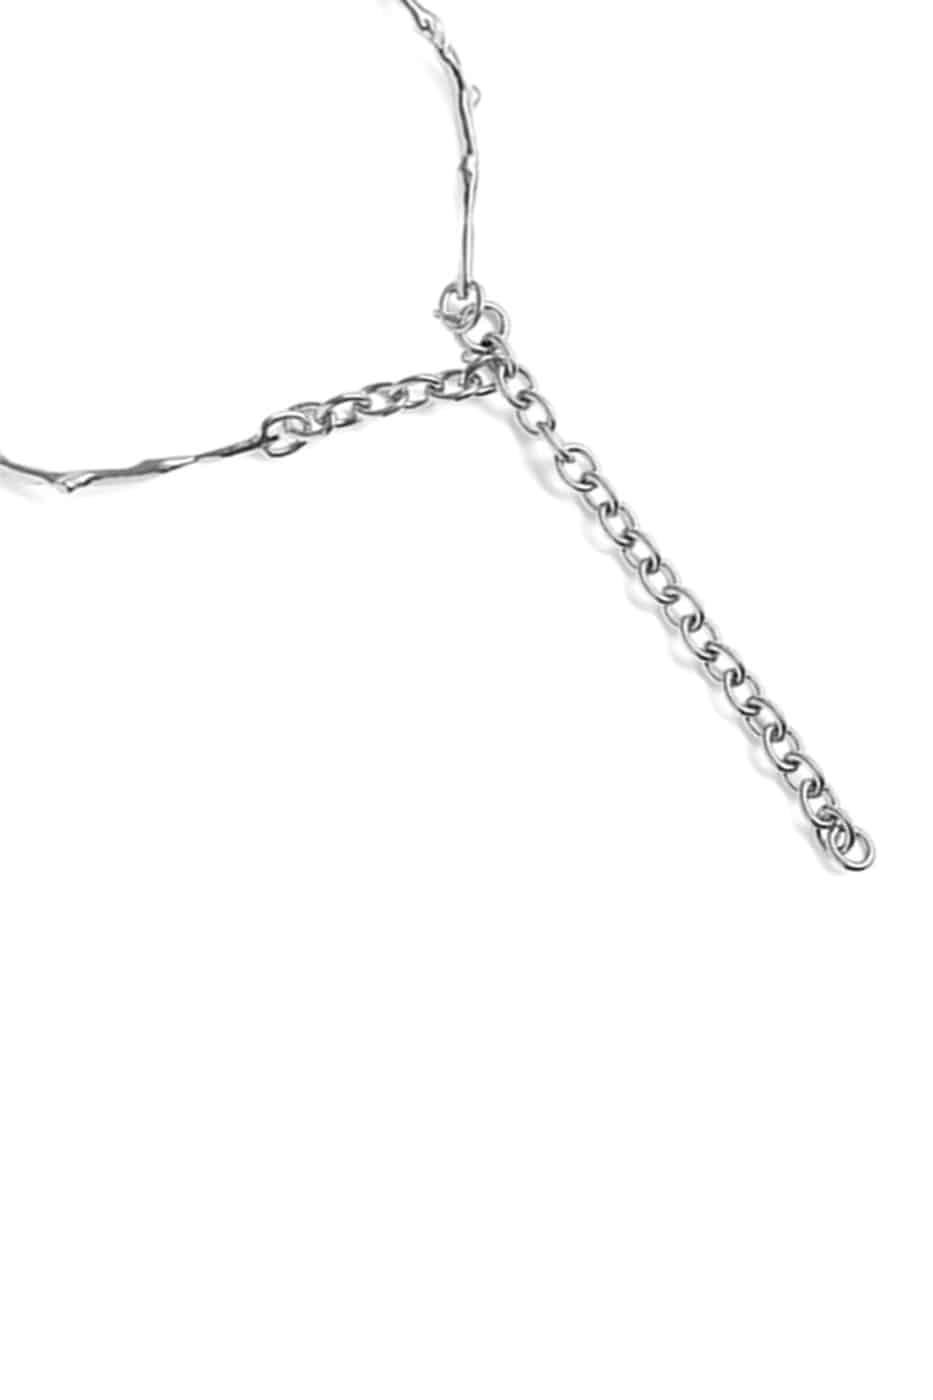 기본트렌드 Hustad HUSTAD 129 stems silver necklace_ 925 실버 줄기 네크리스  자체제작 국내 